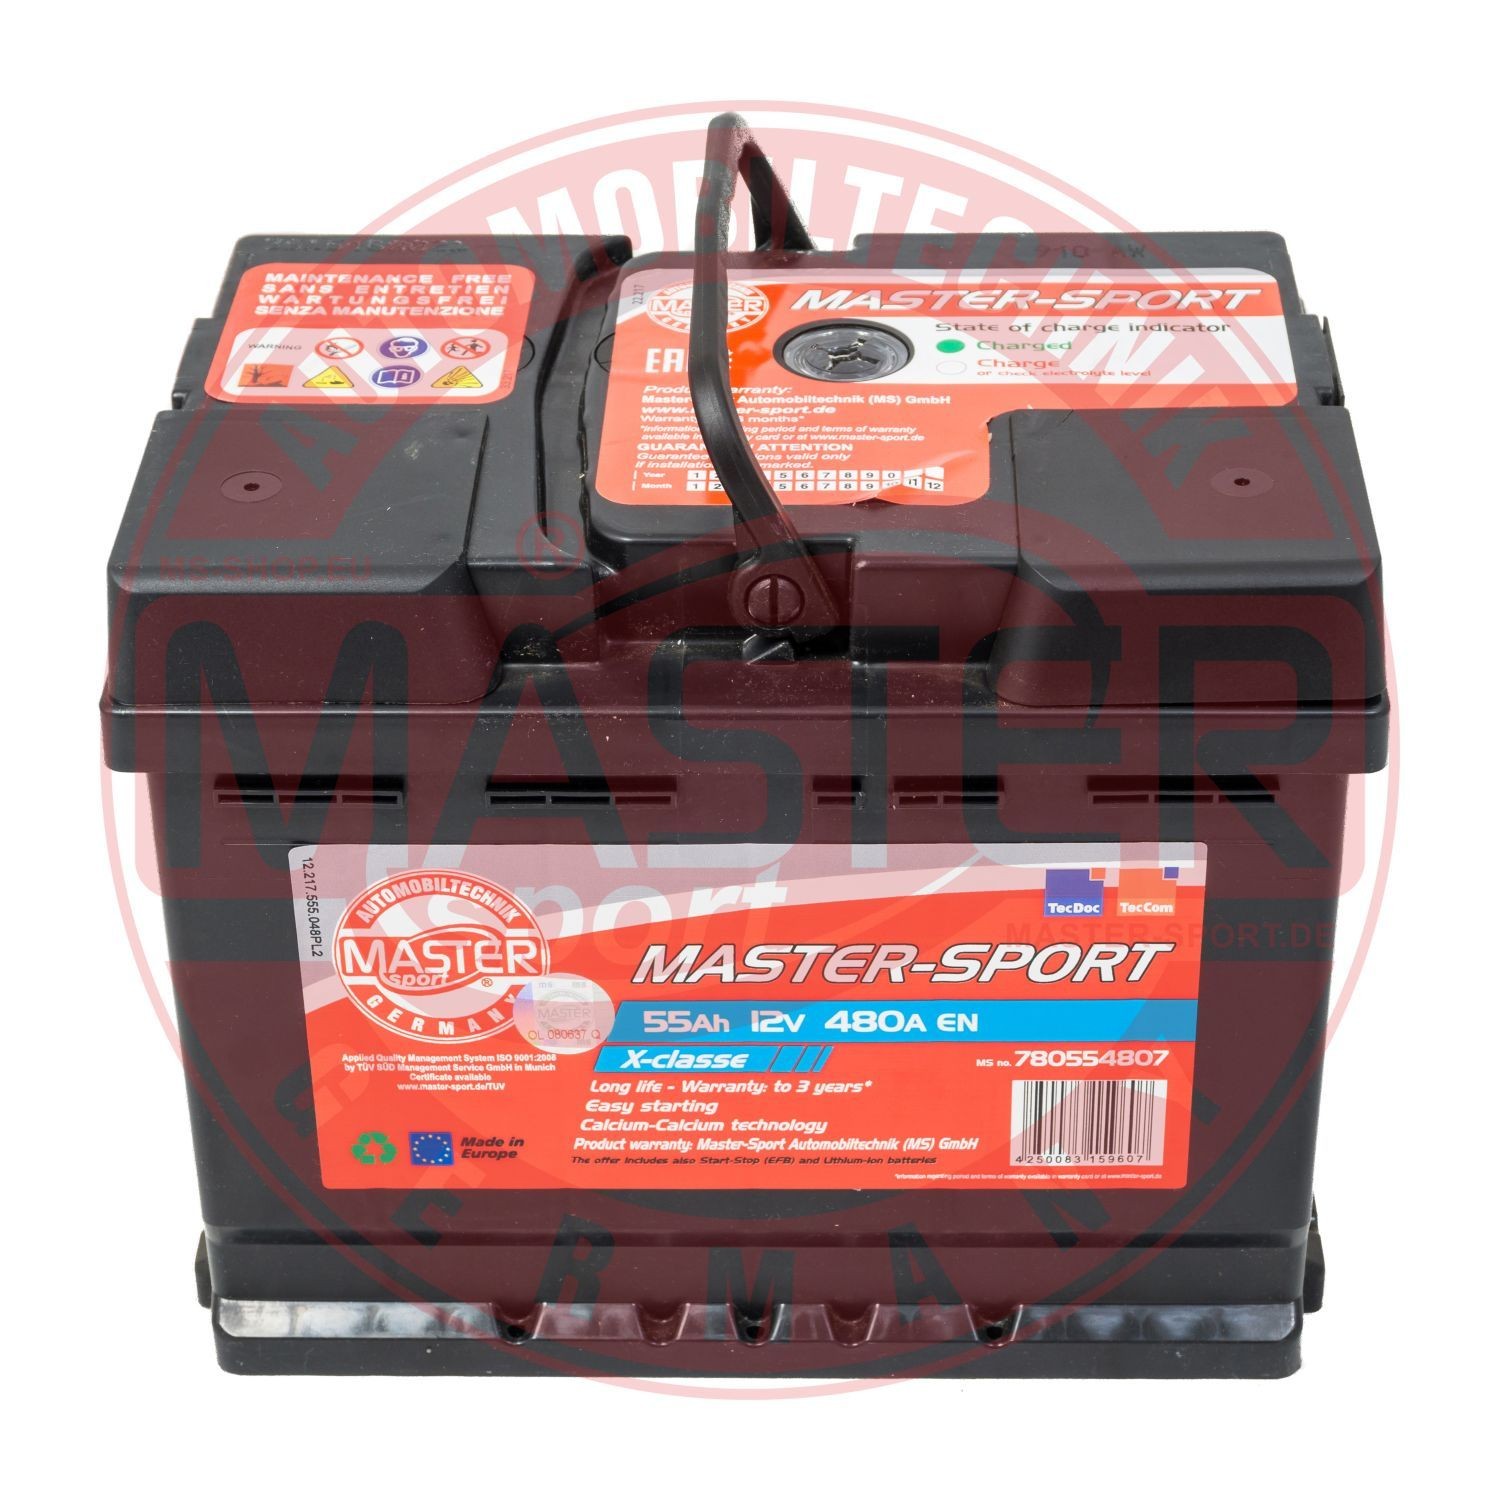 MASTER-SPORT 750554802 Battery 1201202